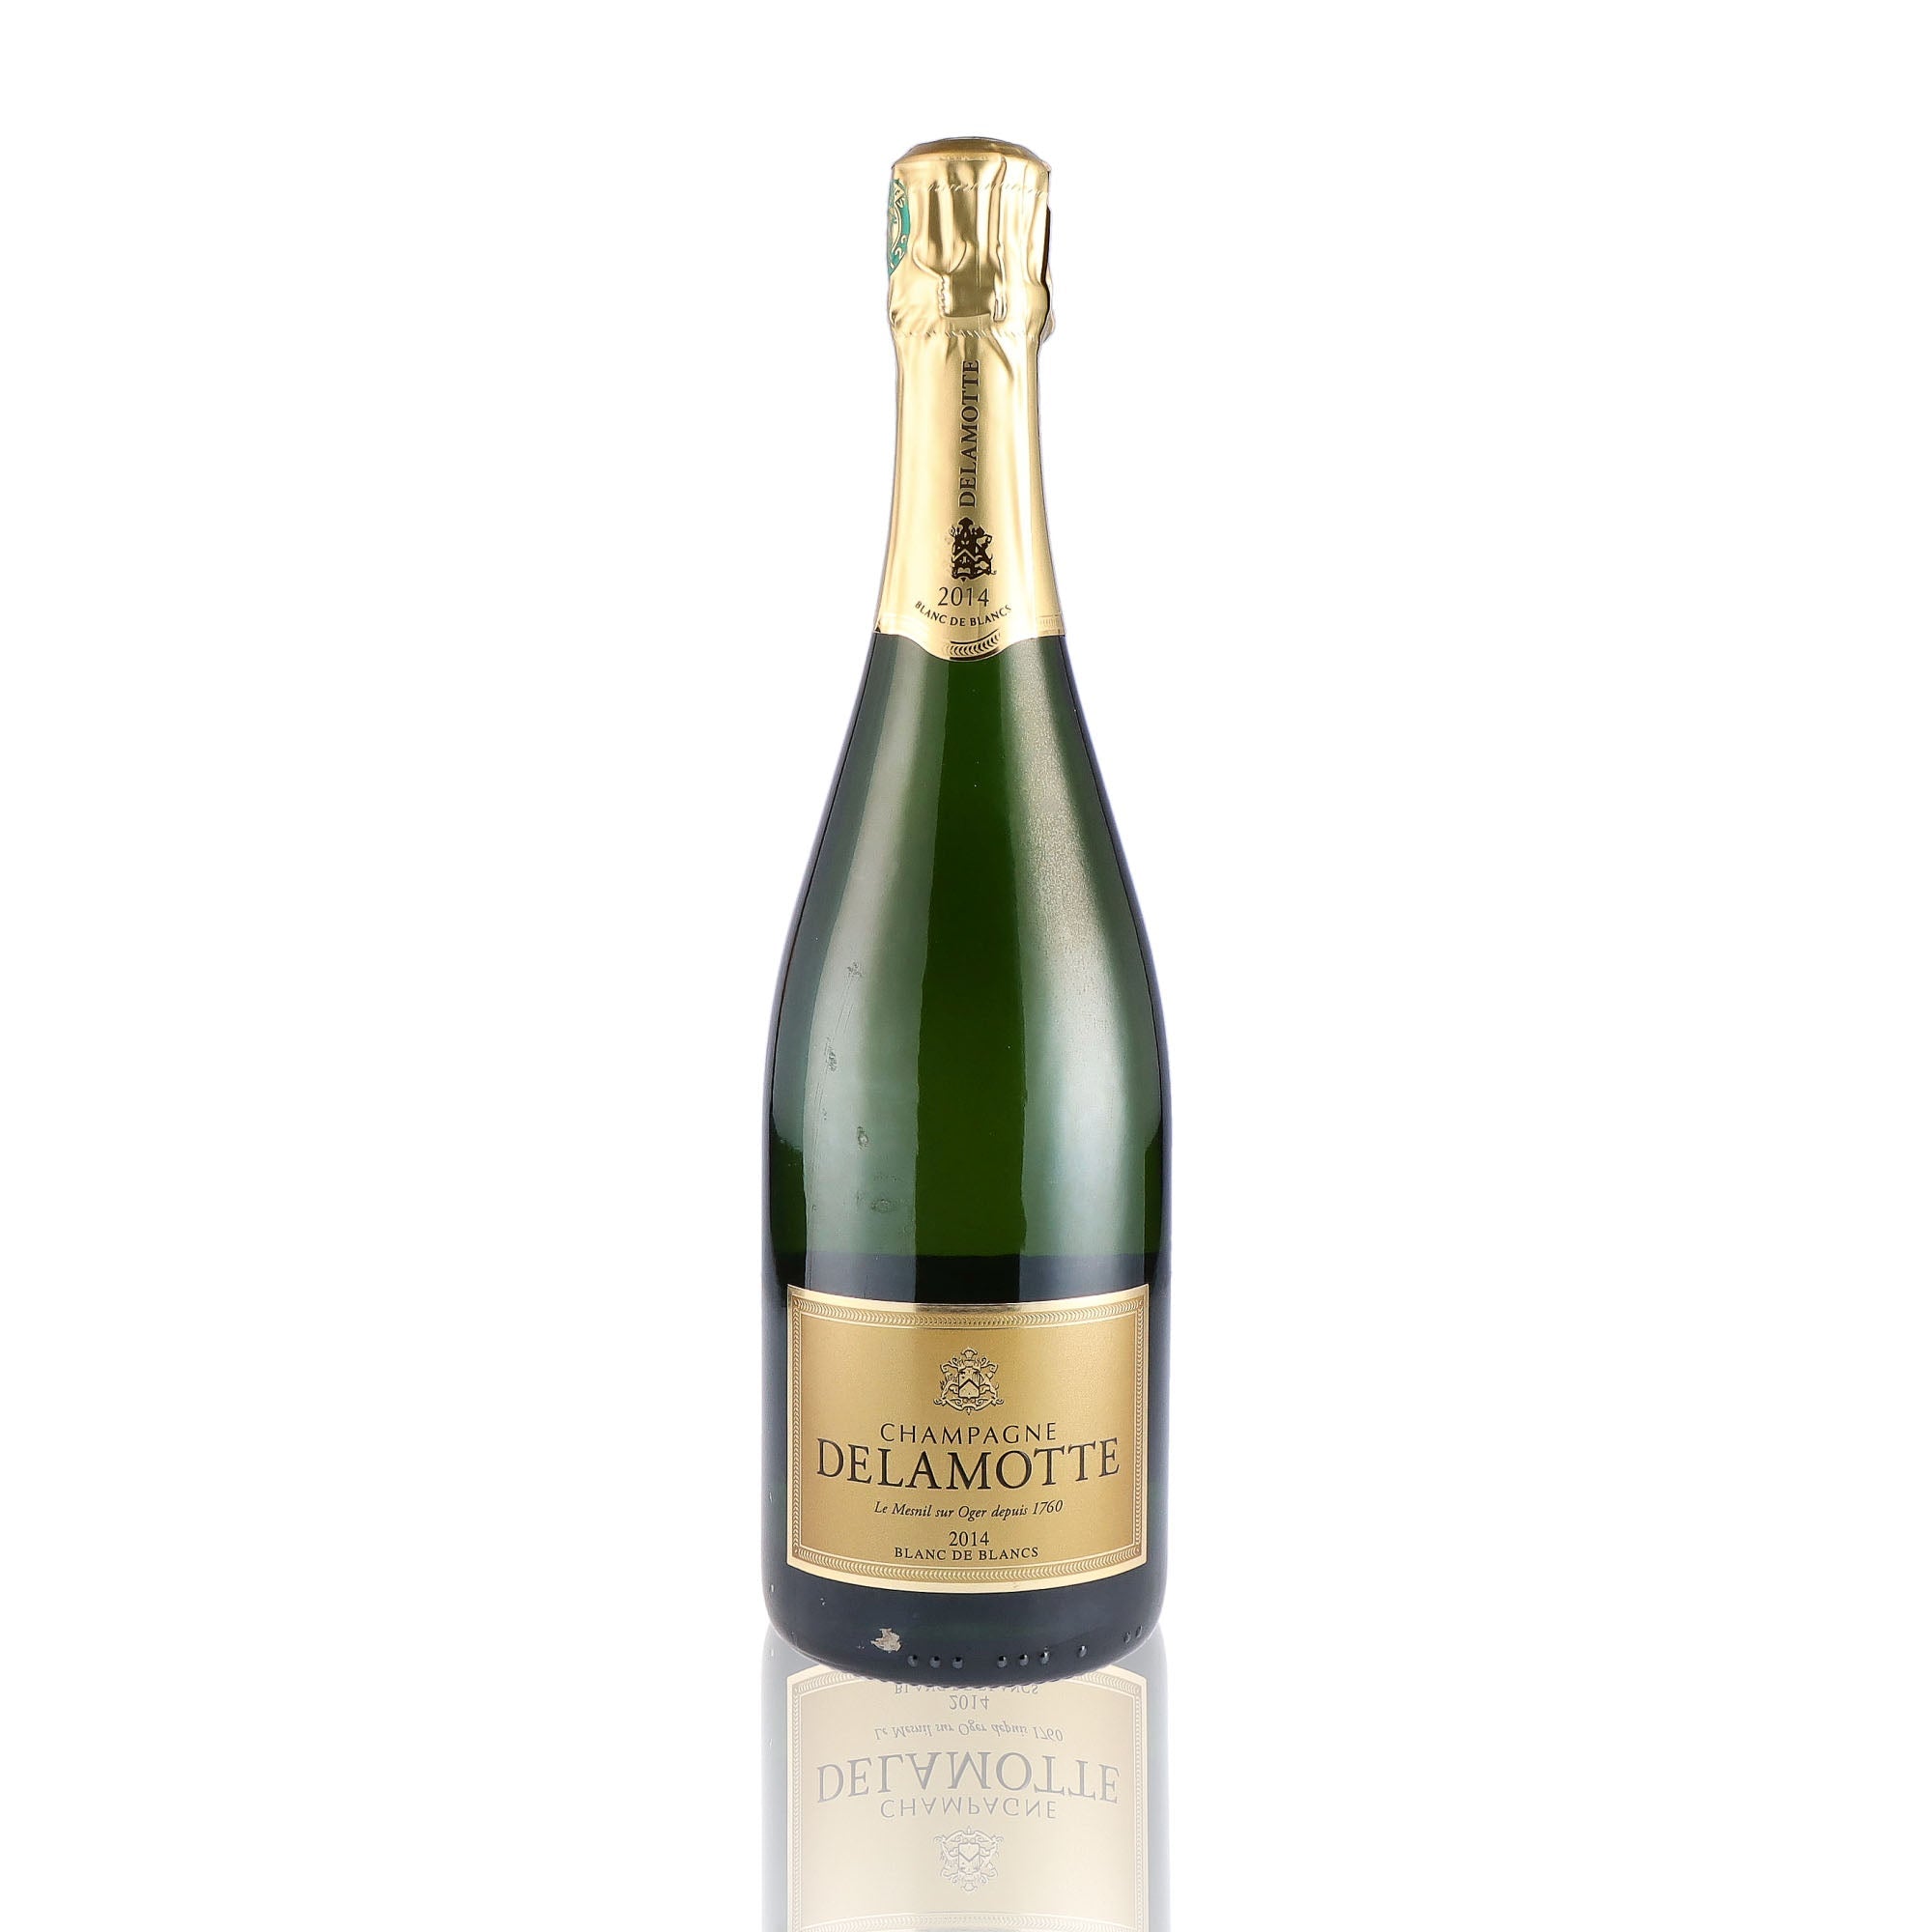 Une bouteille de champagne de la marque Delamotte, de type blanc de blancs, millésime 2014.